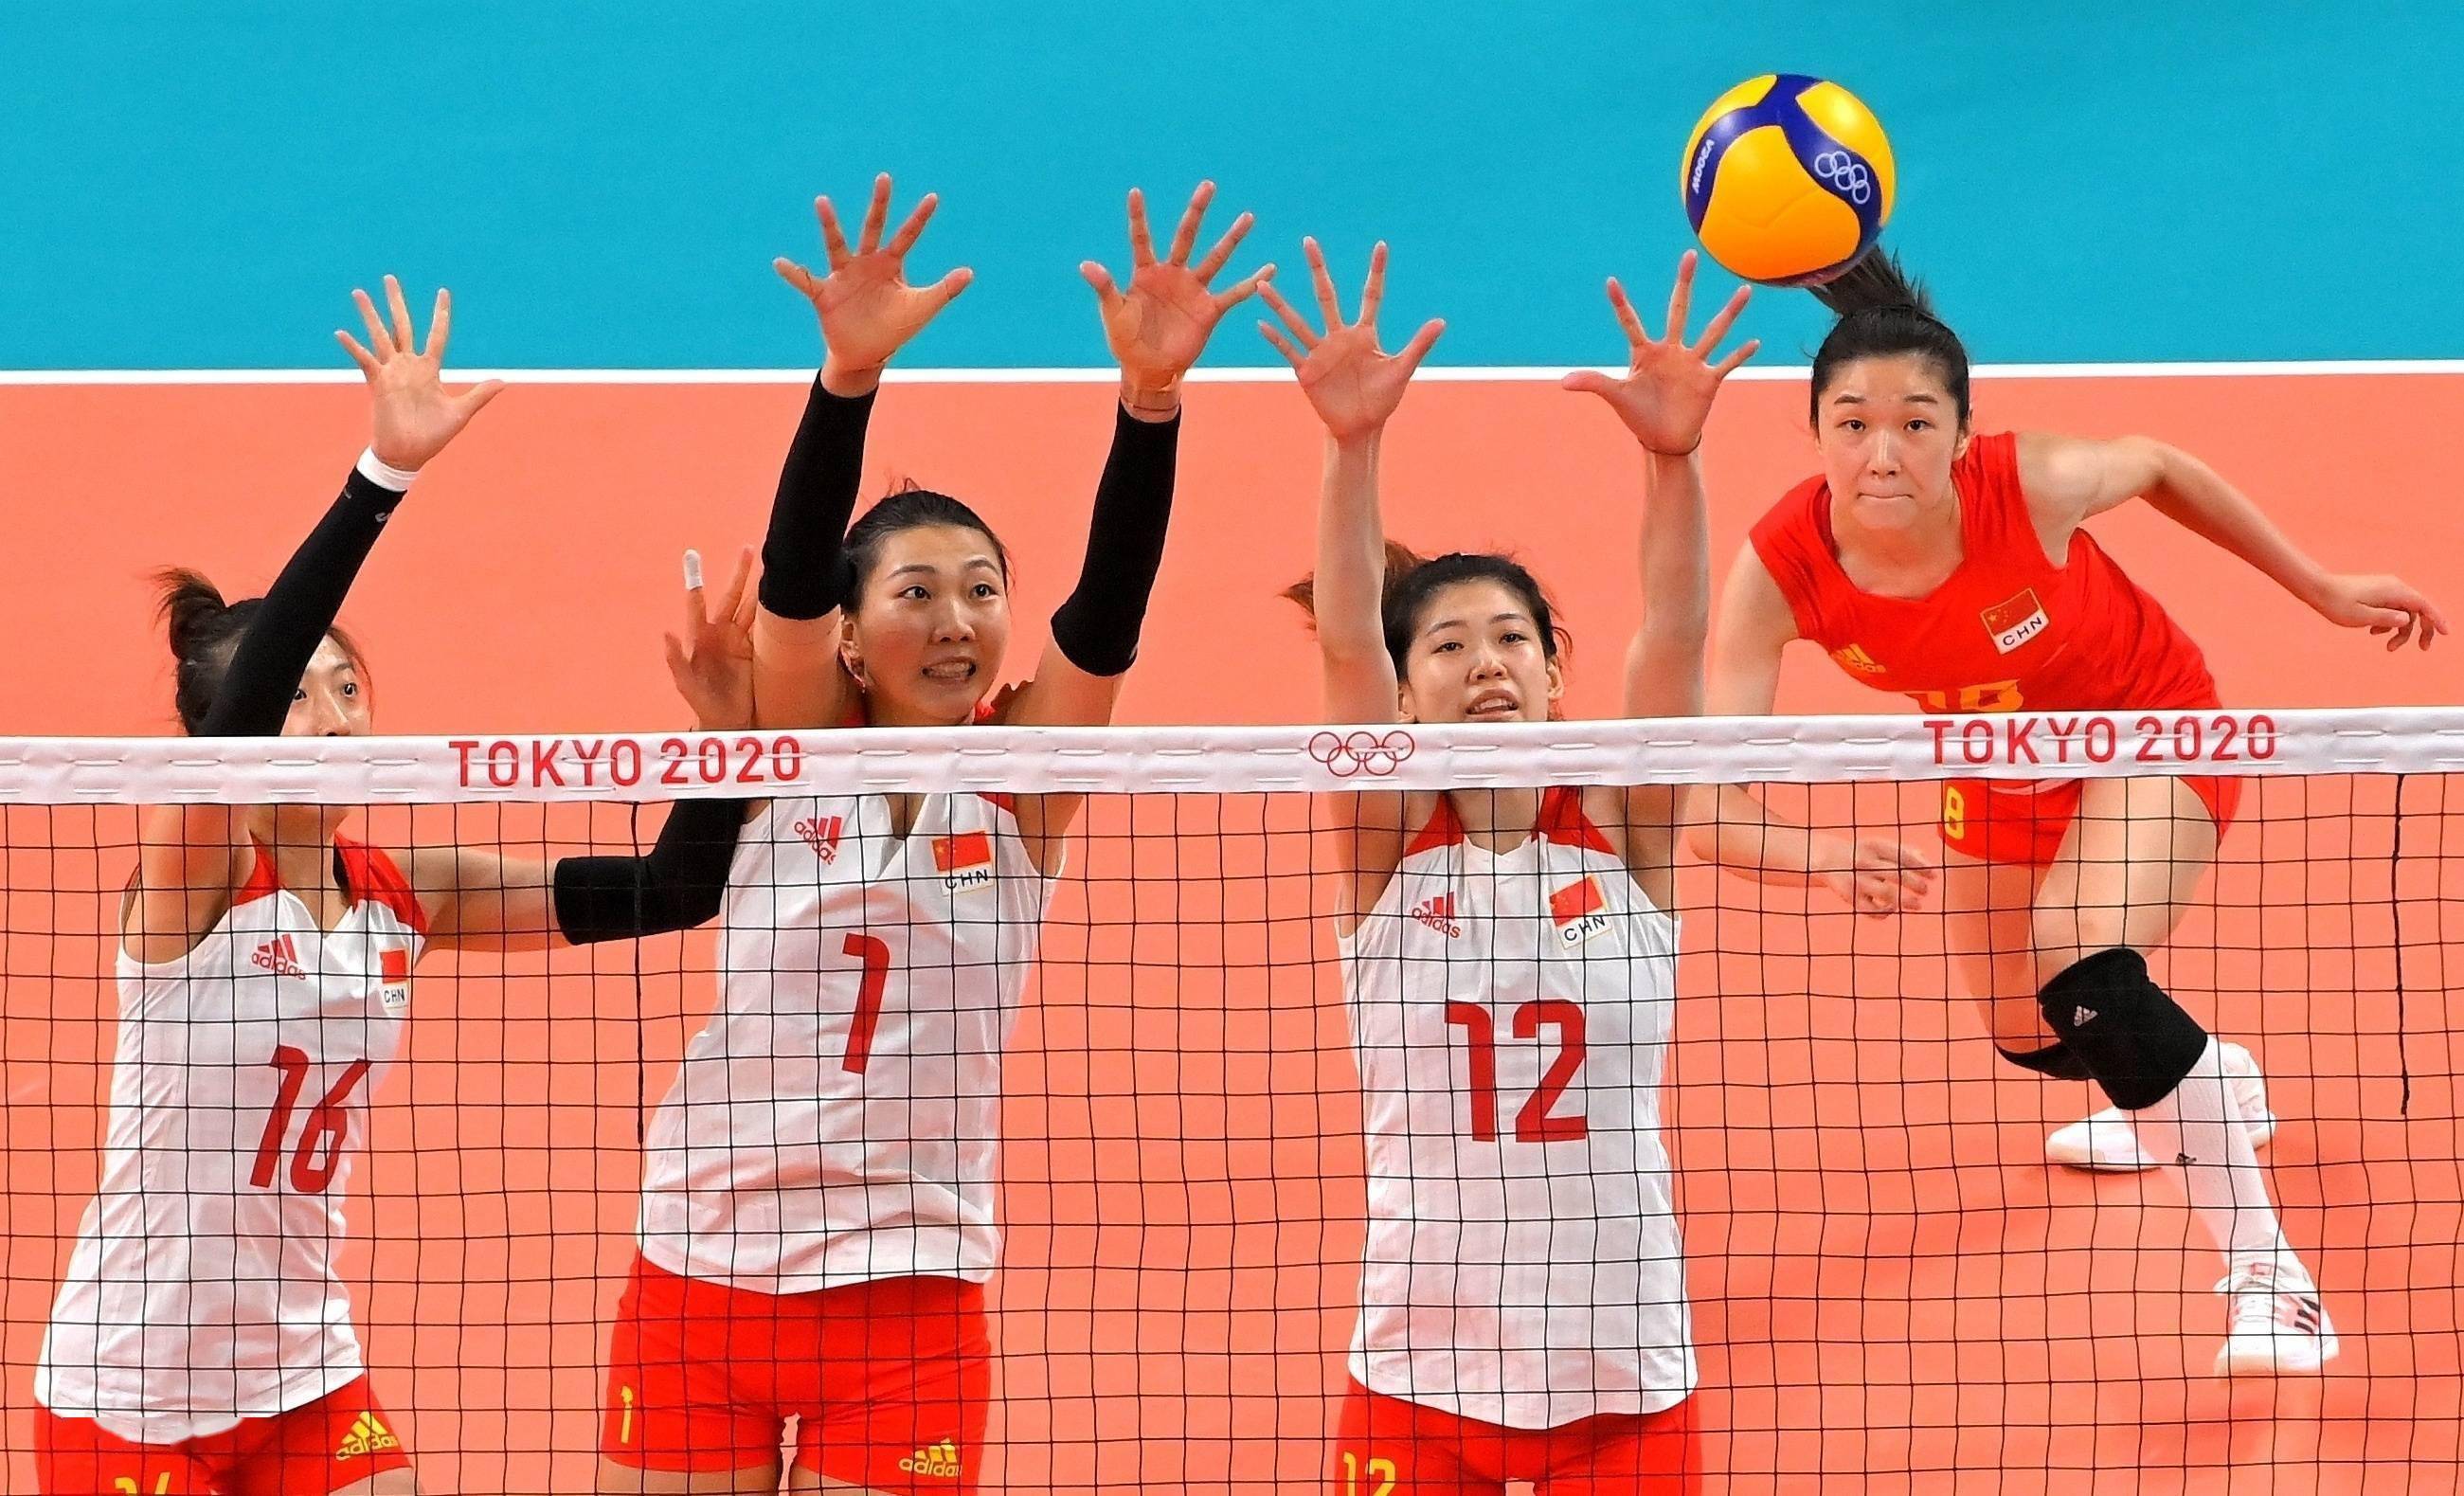 【东京奥运会】中国女排3-0击败意大利,取得小组赛首胜